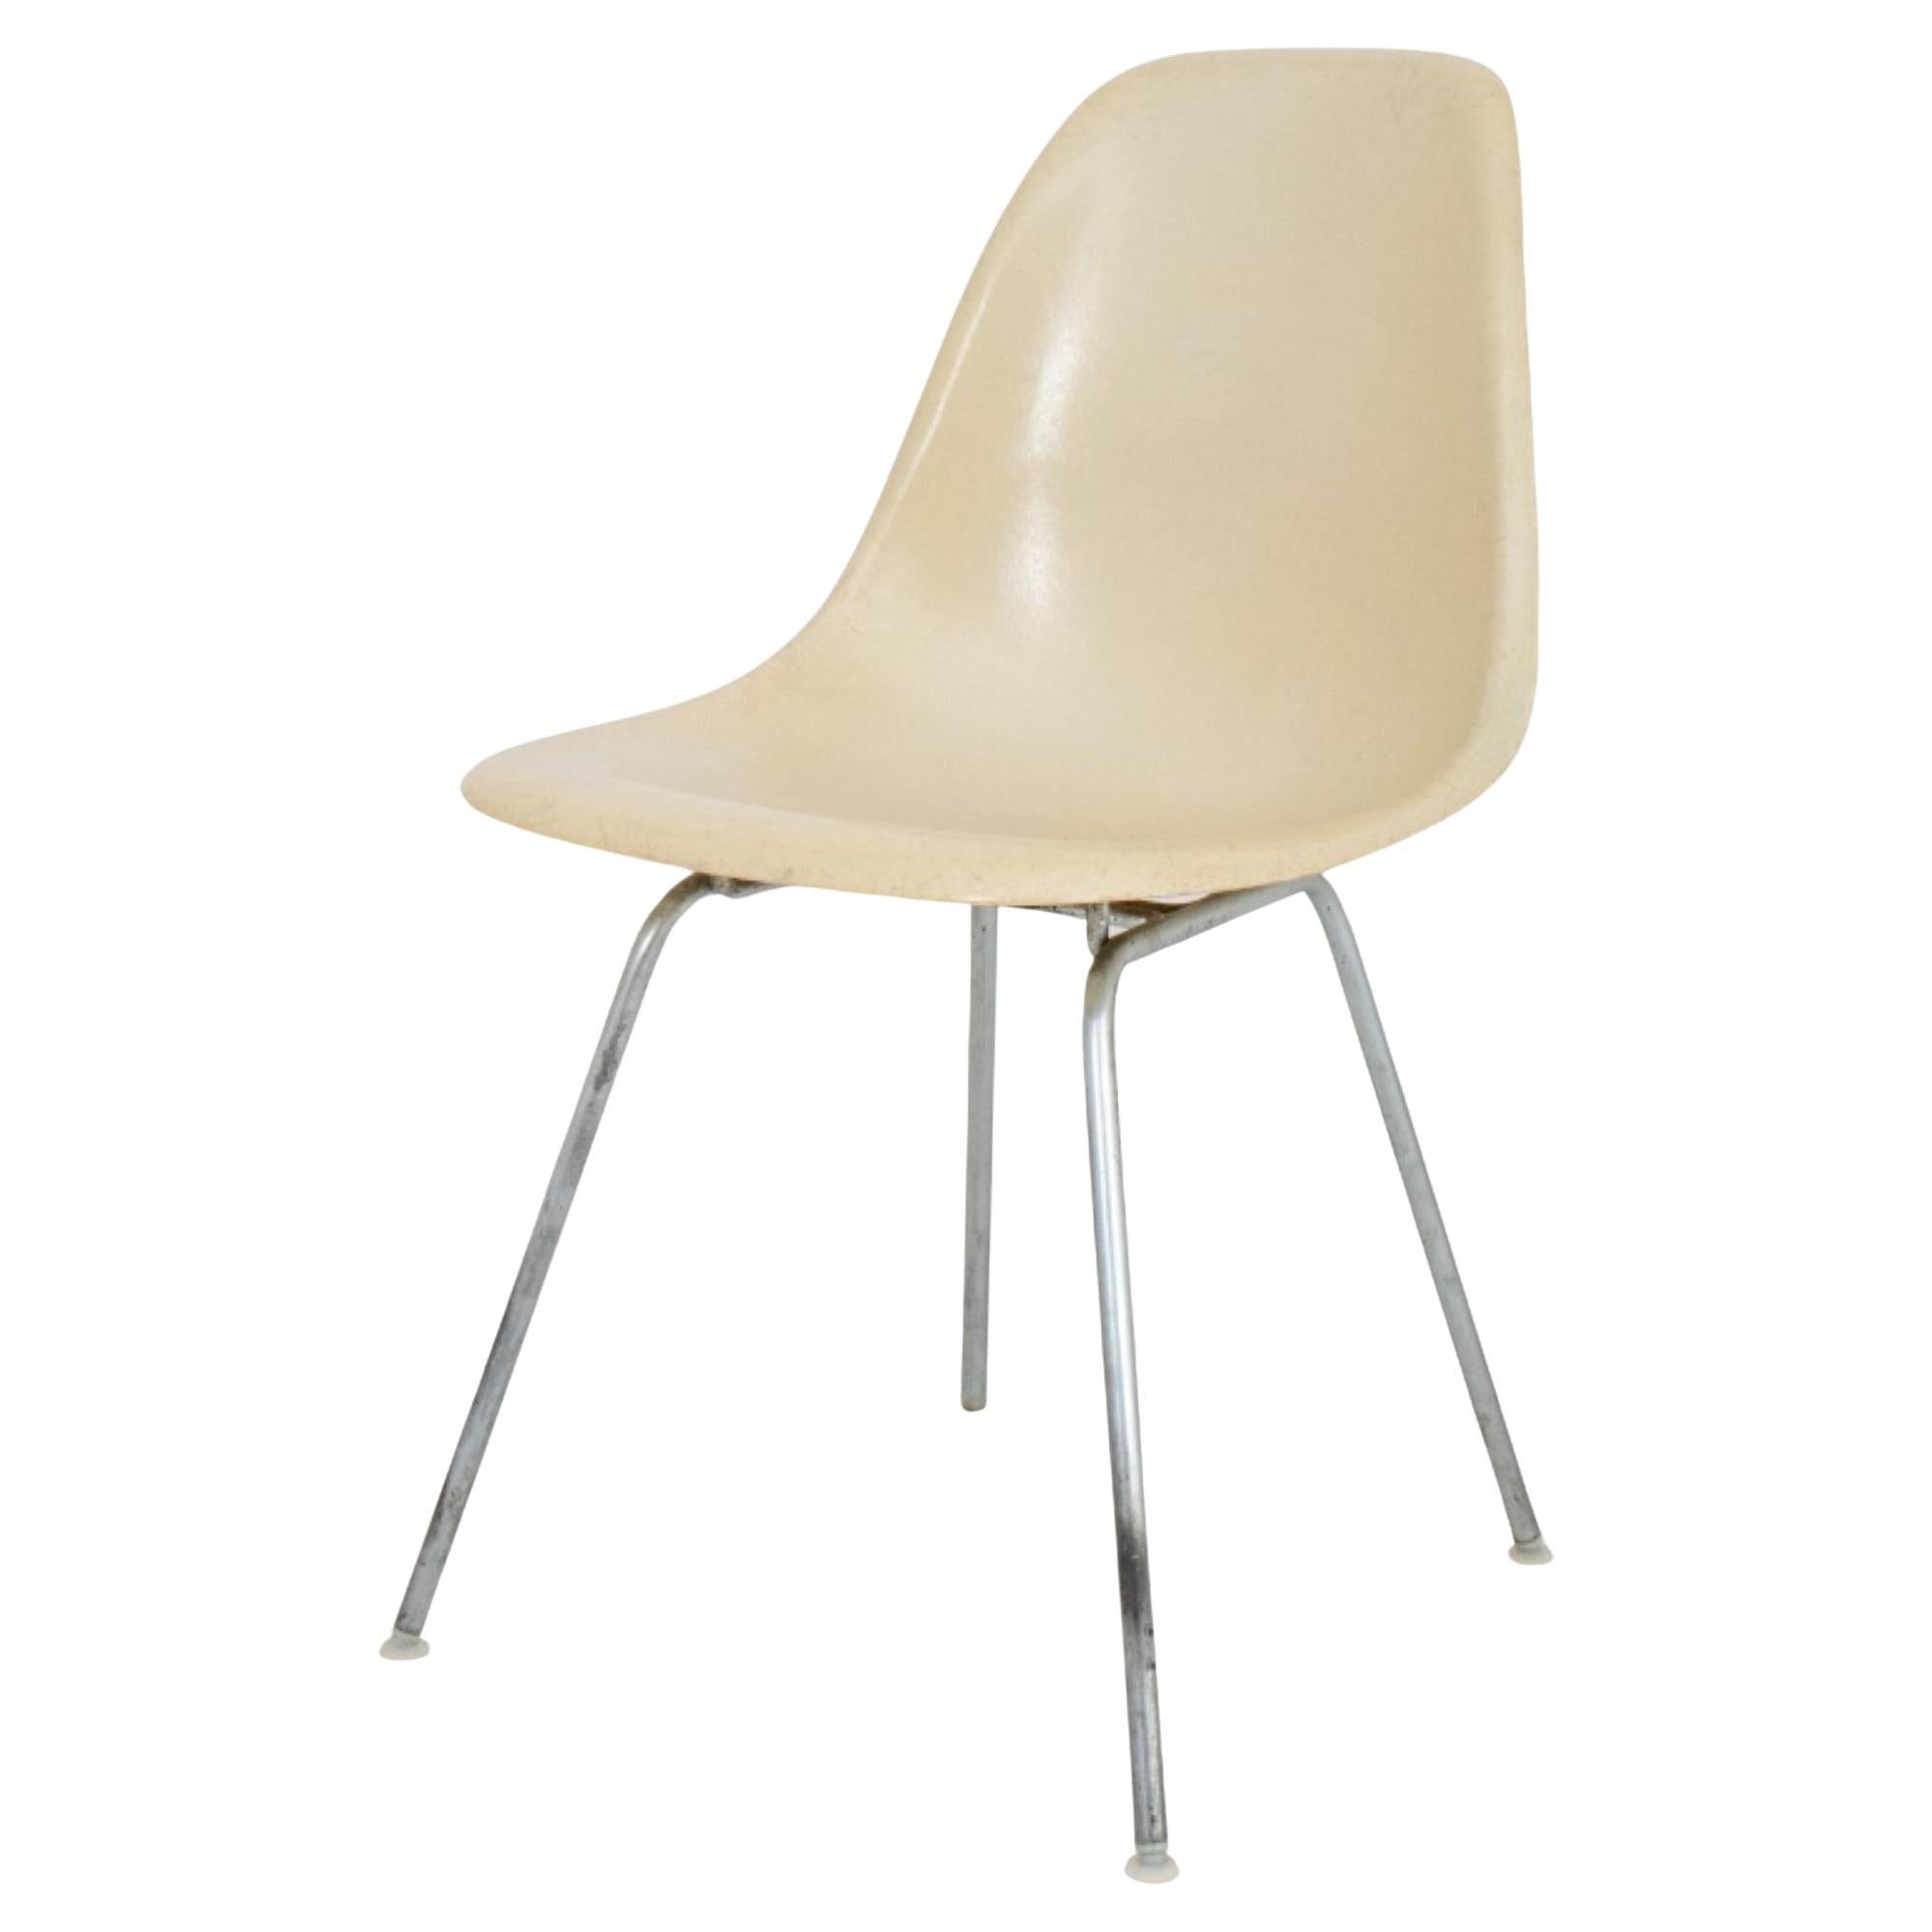 Eames for Herman Miller Fiberglass Shell Chair